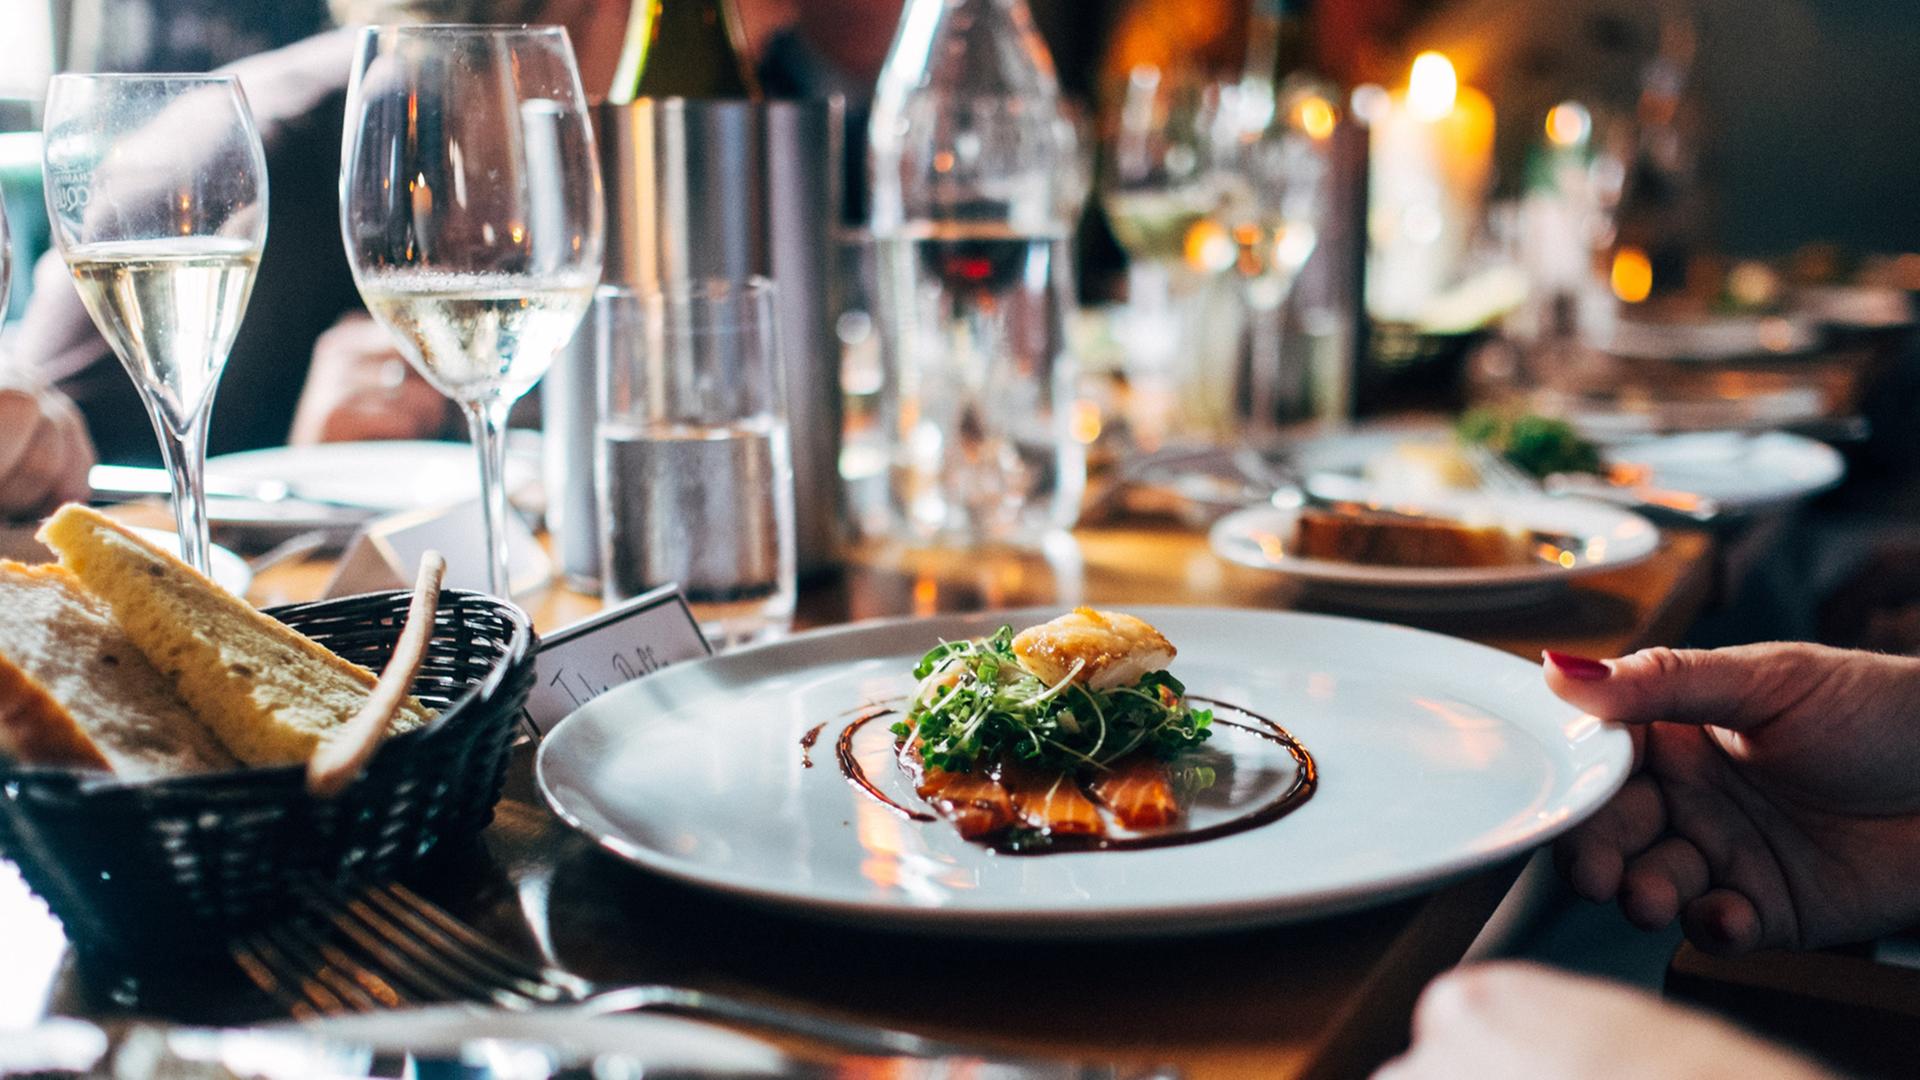 Auf einem weißen Teller auf einer festlich gedeckten Tafel sind Salat und Fisch kunstvoll arrangiert.